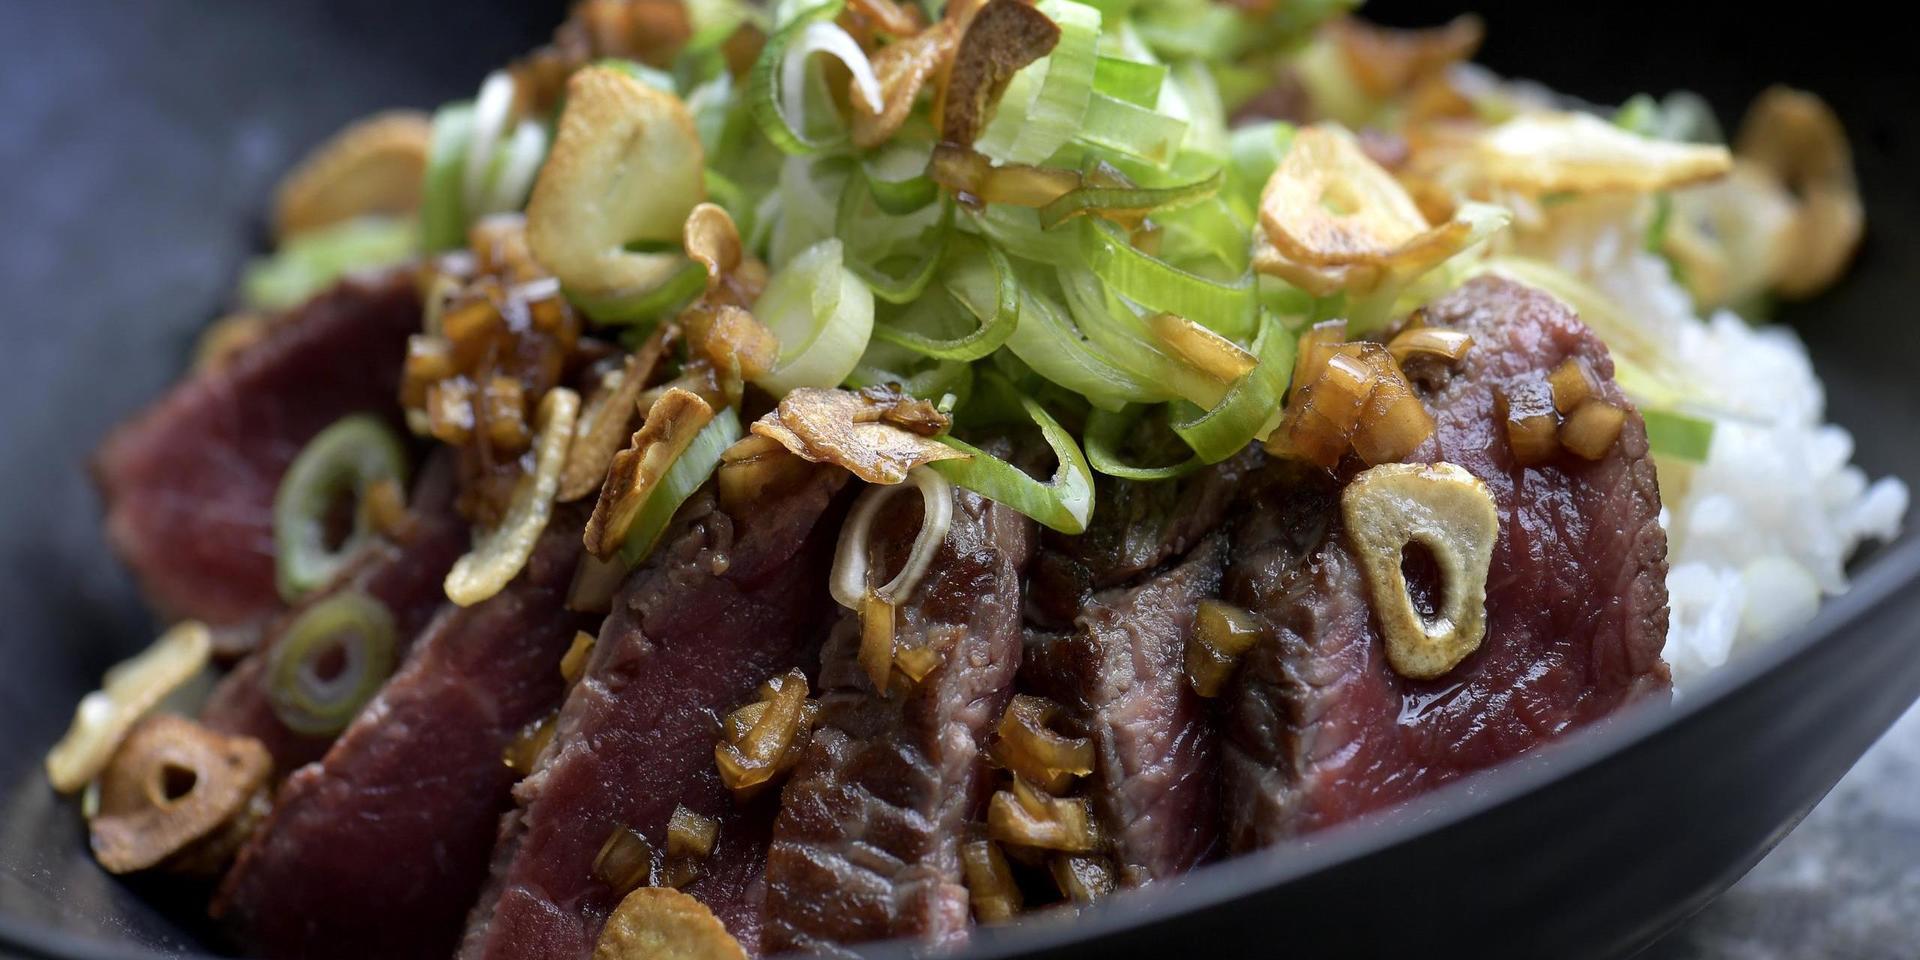 Beef tataki är hastigt stekt ryggbiff med läcker sås av soja och sake.